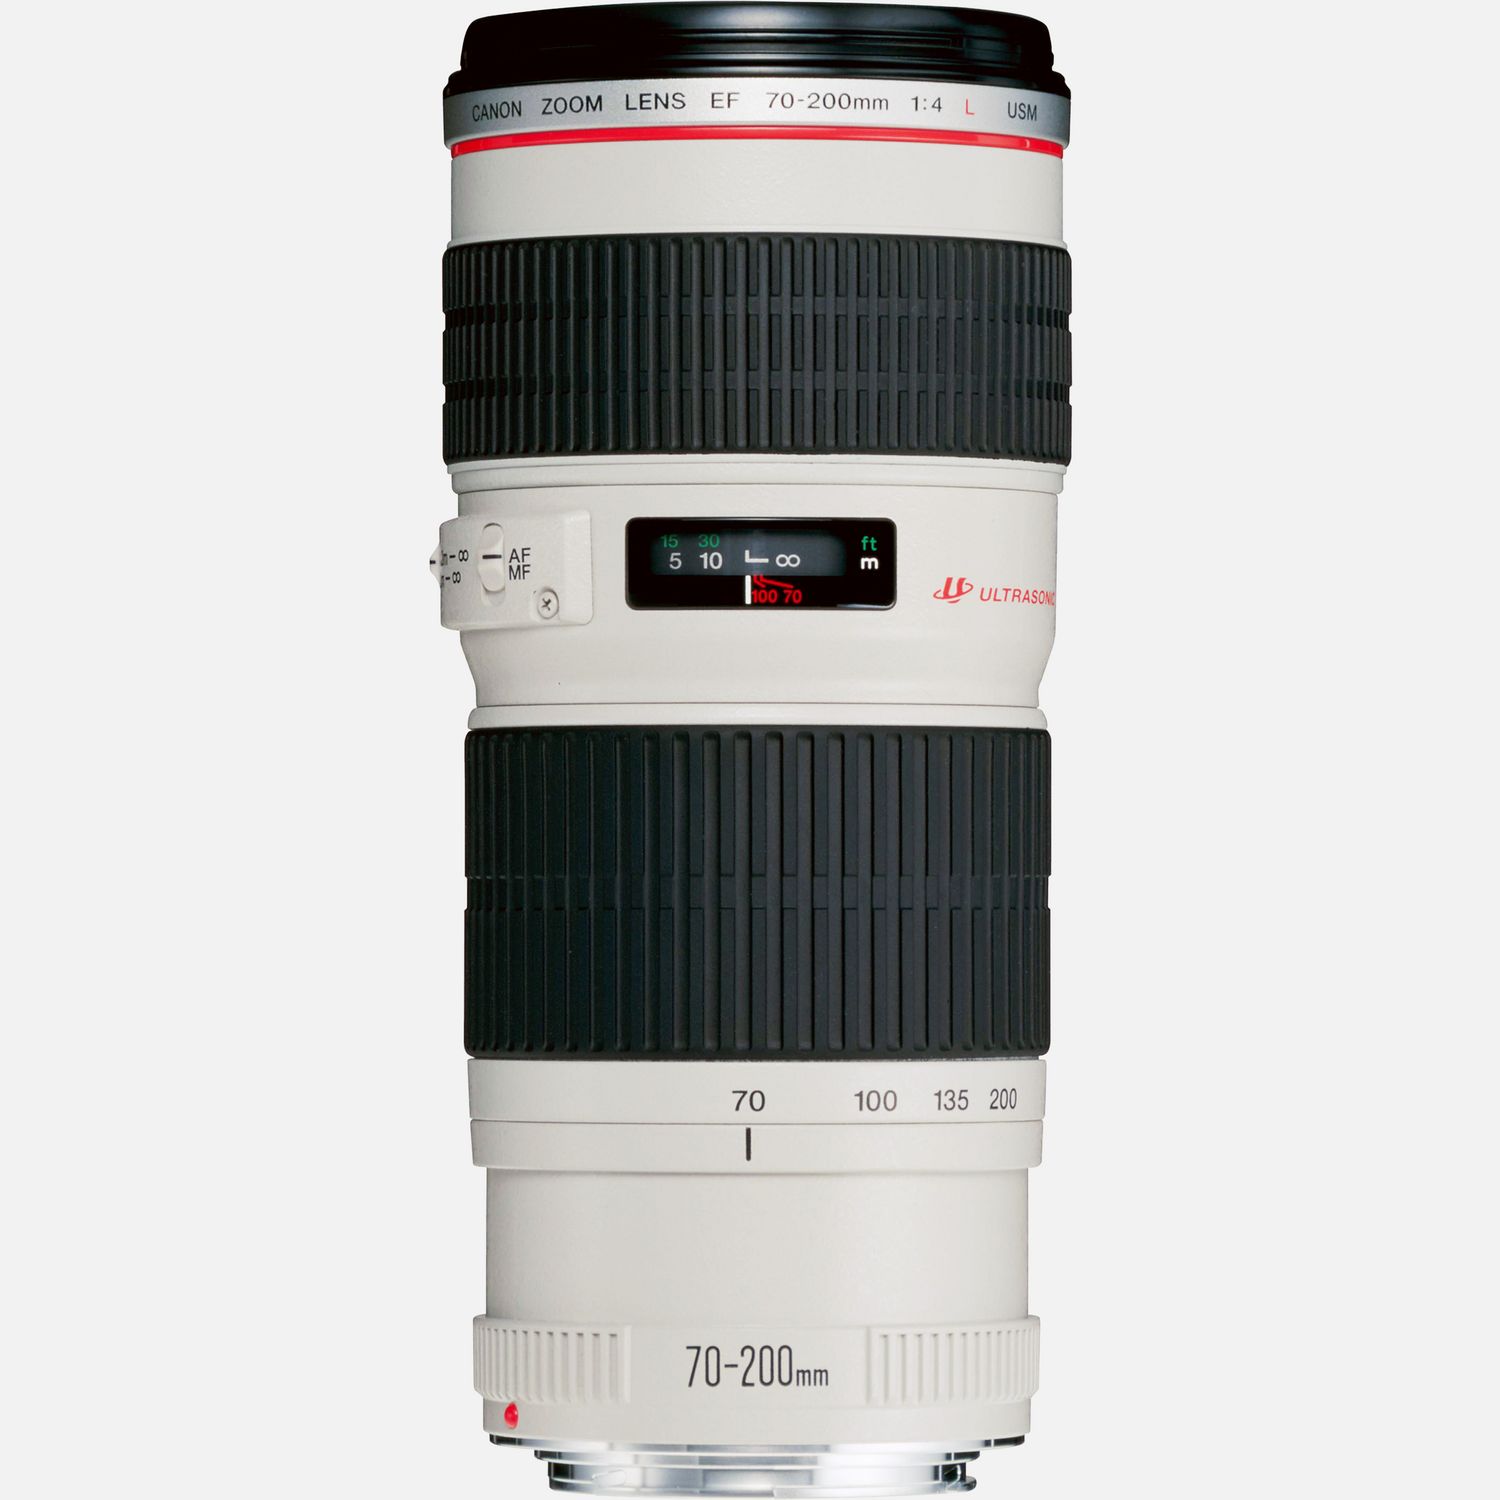 Buy Canon EF 70-200mm f/4L USM Lens â Canon Sweden Store